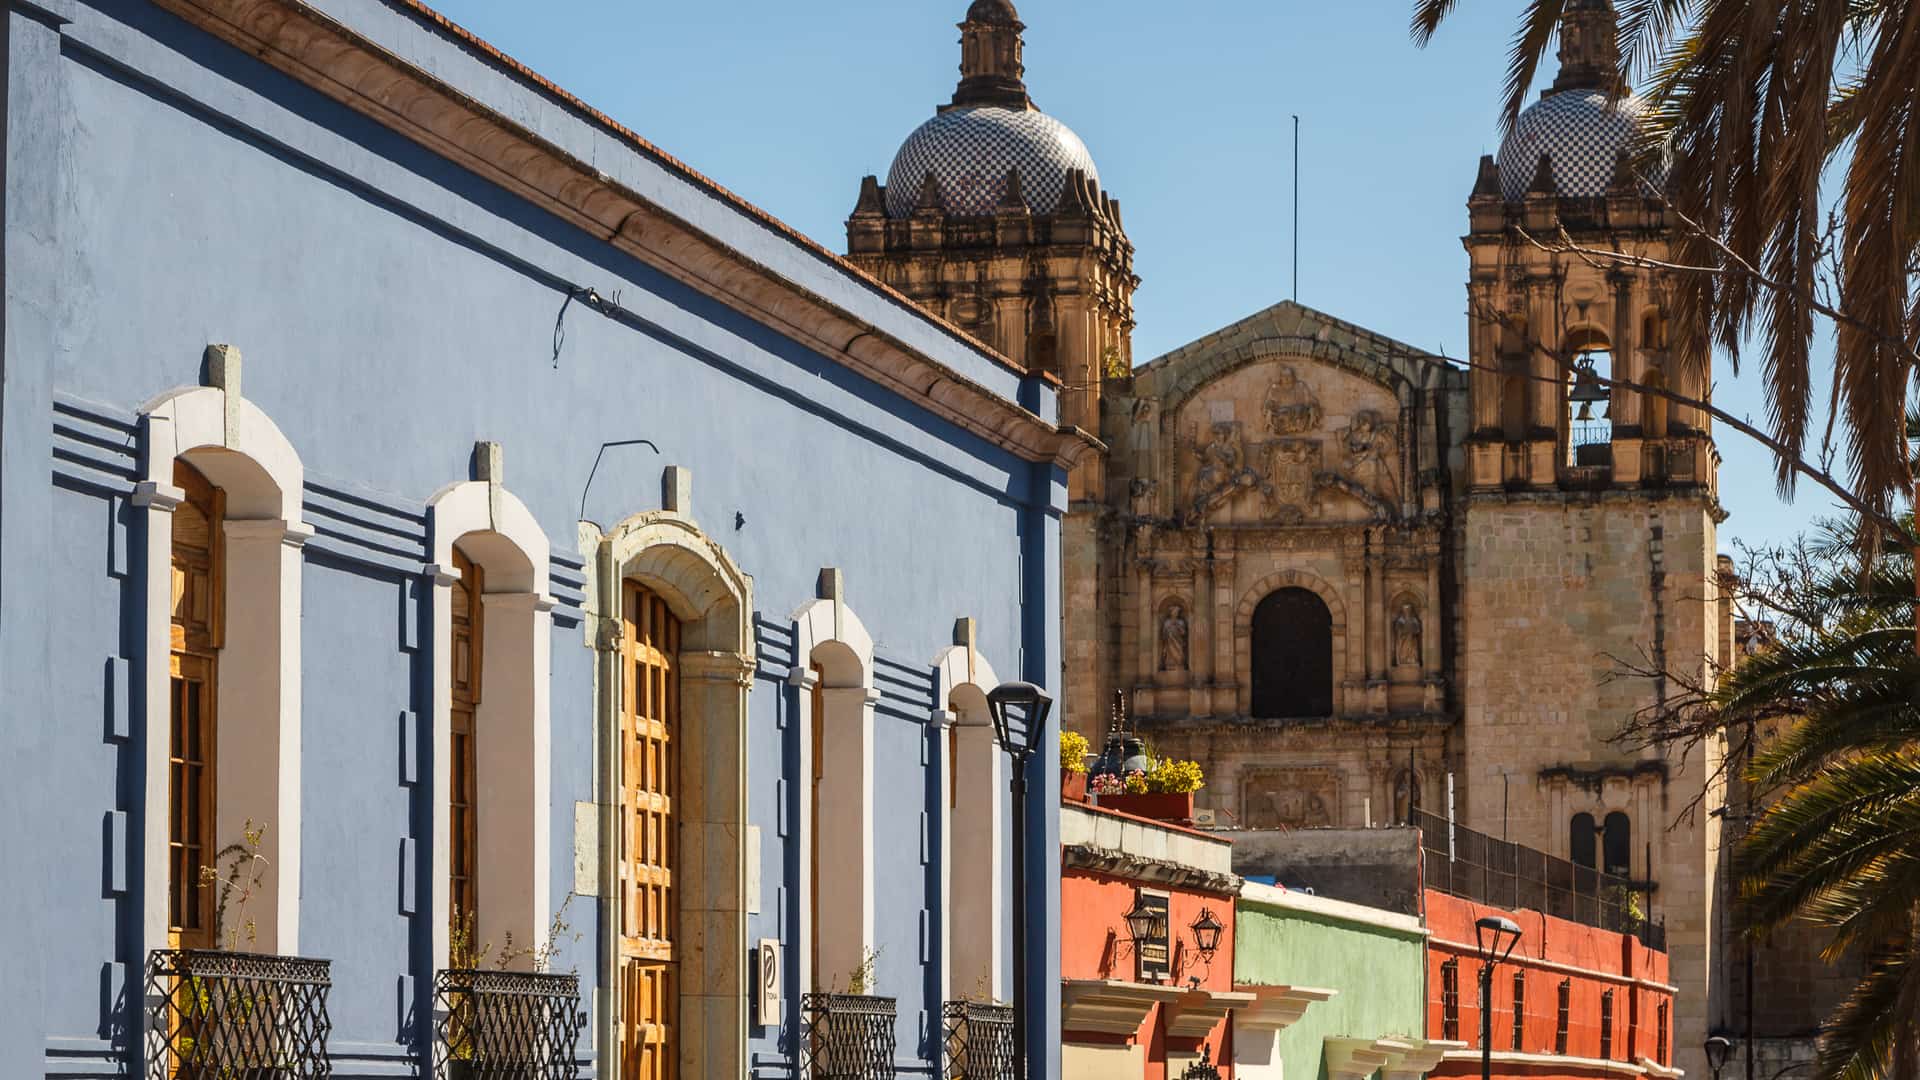 fachadas coloniales de la ciudad de oaxaca de mexico donde existen algunas sucursales de izzi